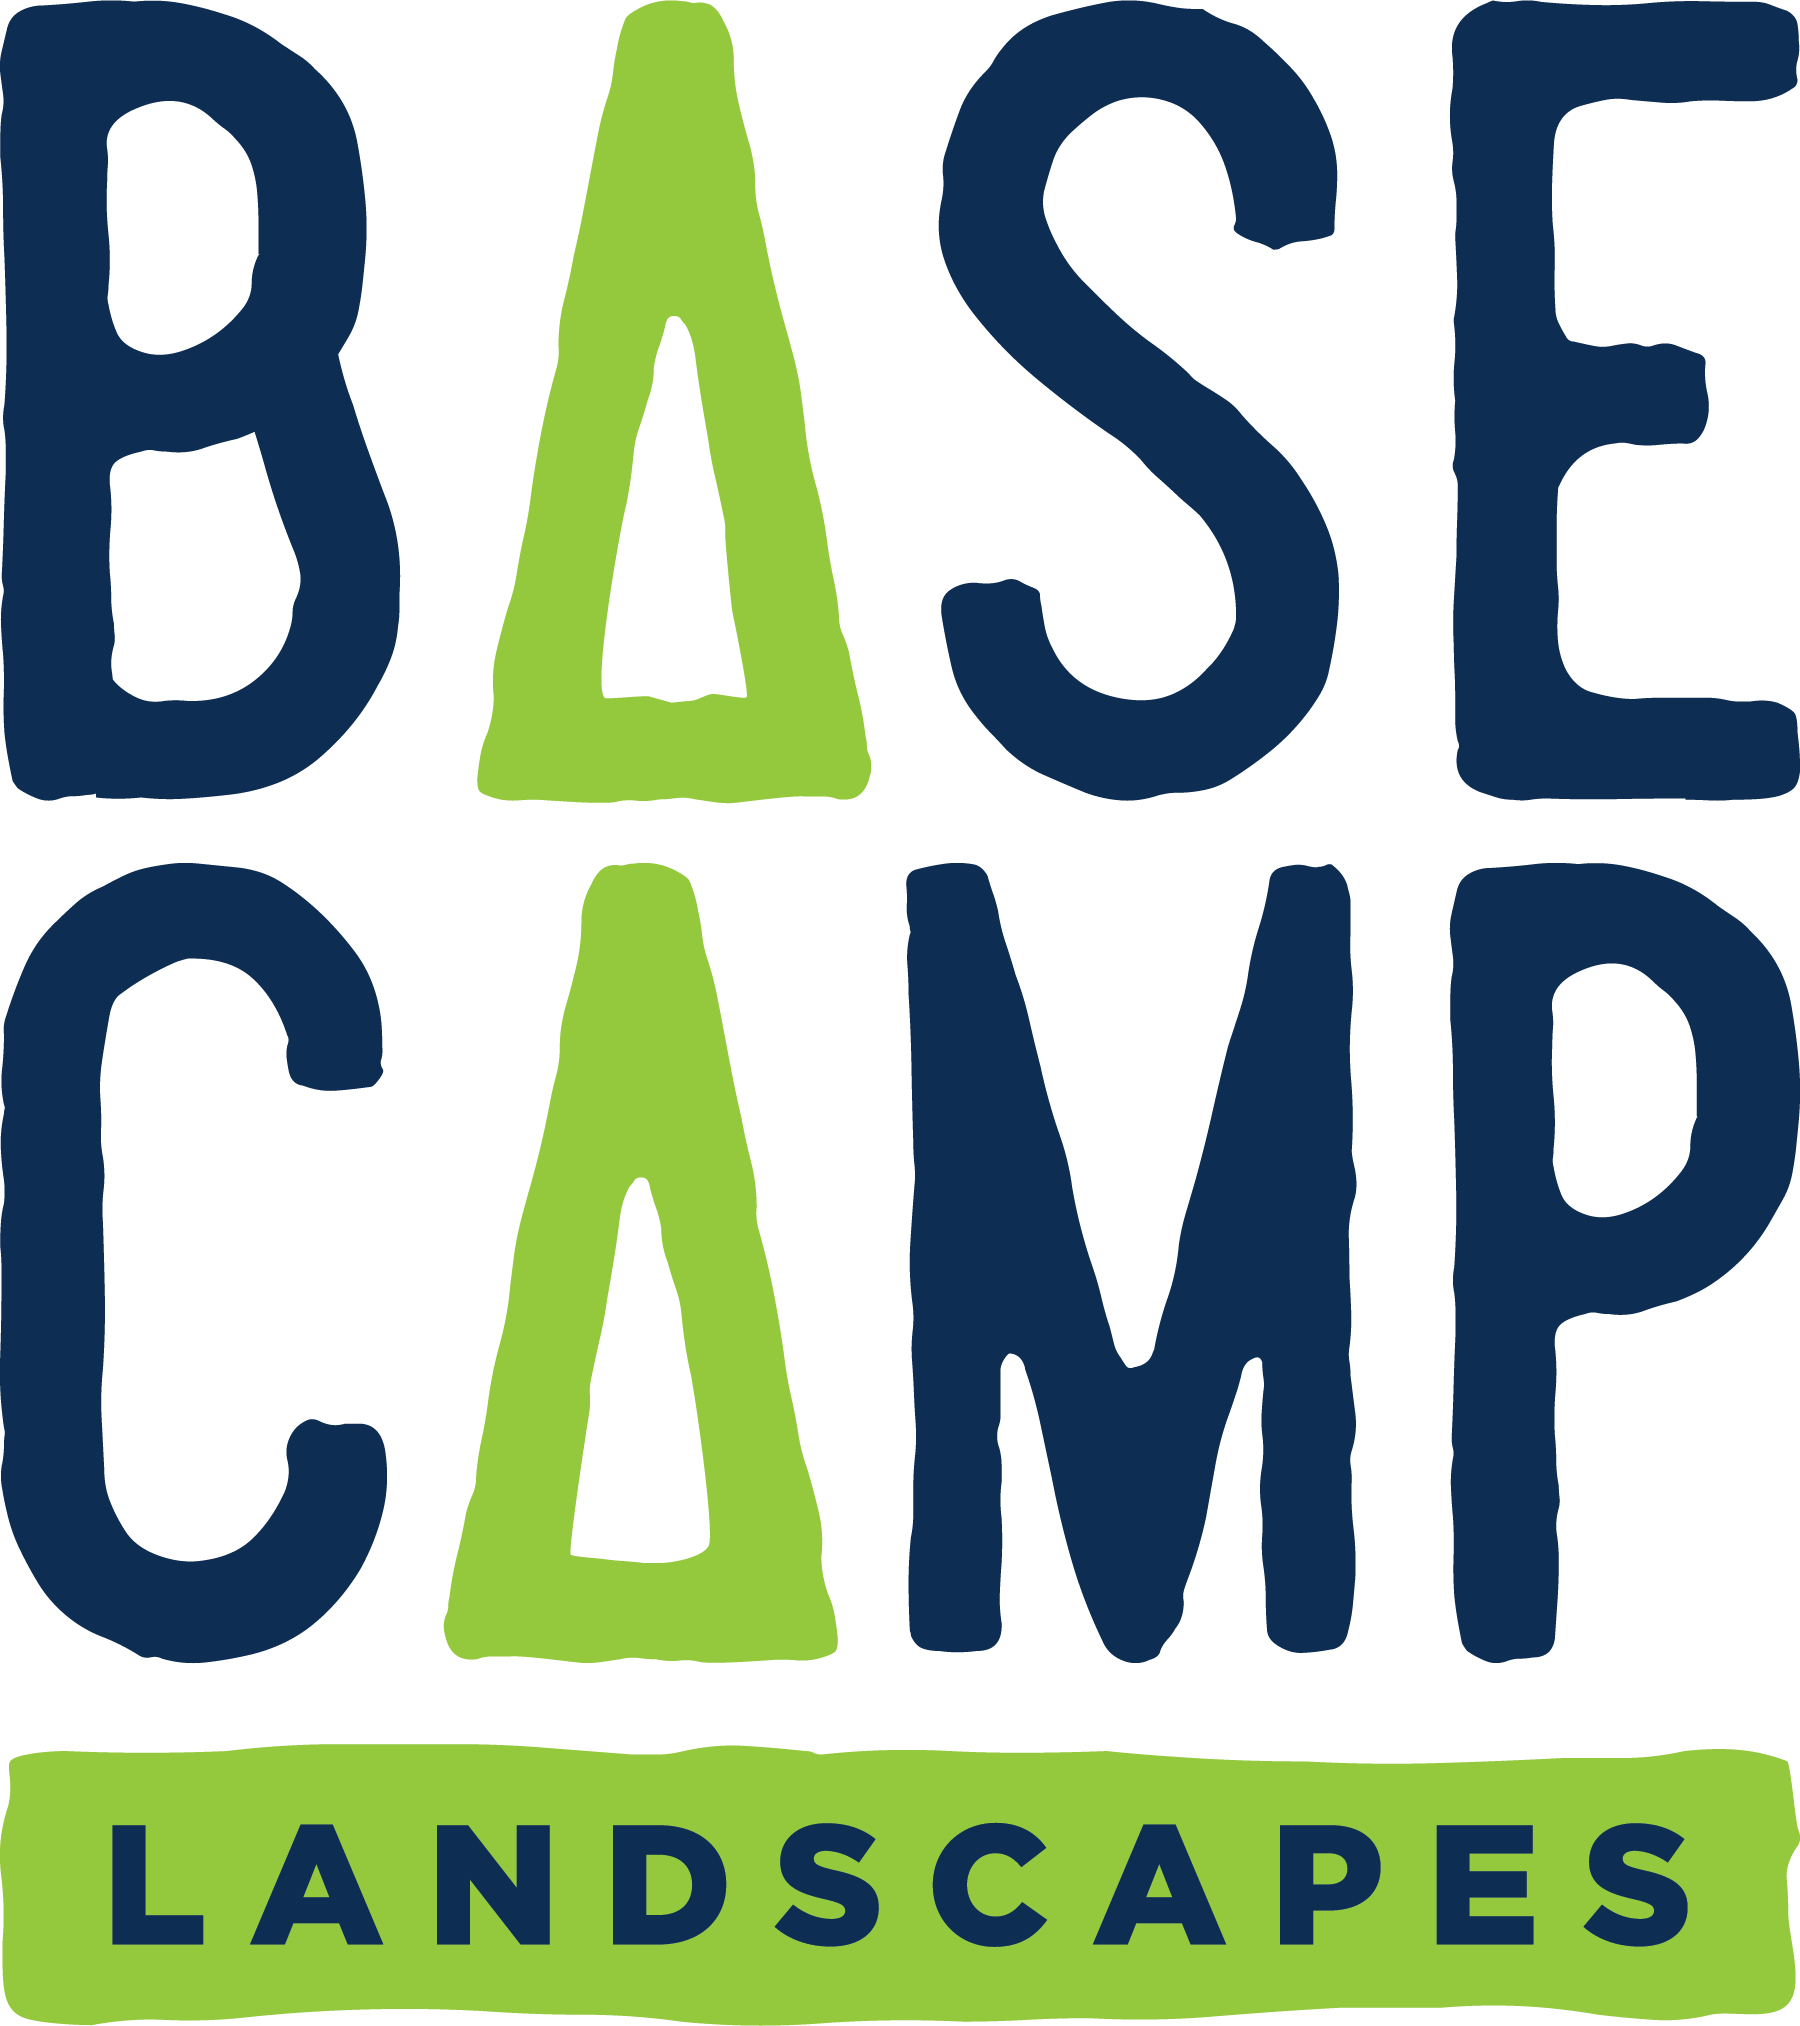 BaseCampLandscapes